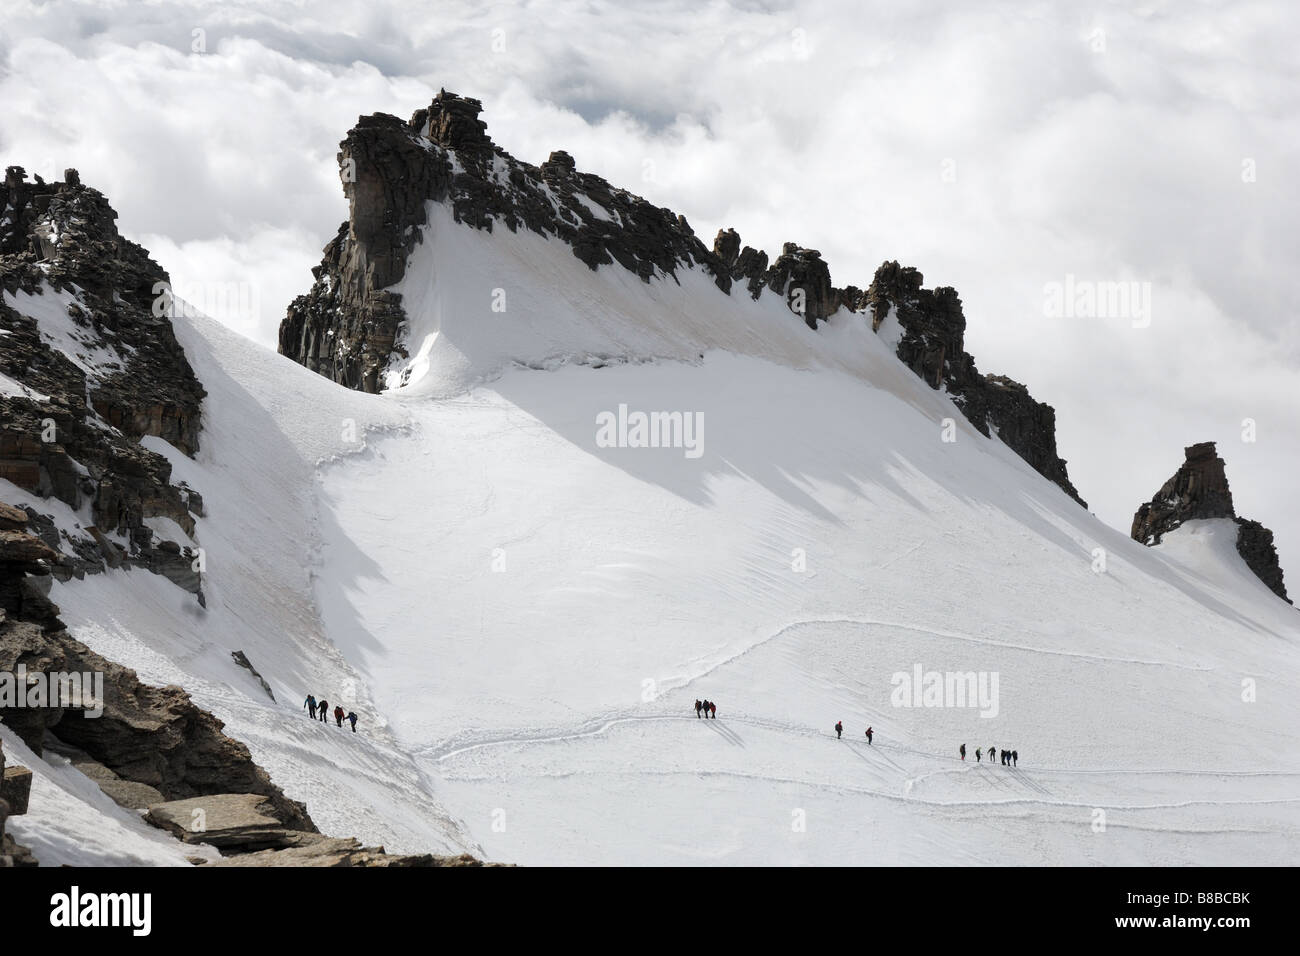 ghiacciaio del Gran Paradiso glacier alpinisti cordata parco nazionale Gran Paradiso Valle d Aosta Italia Italy Stock Photo